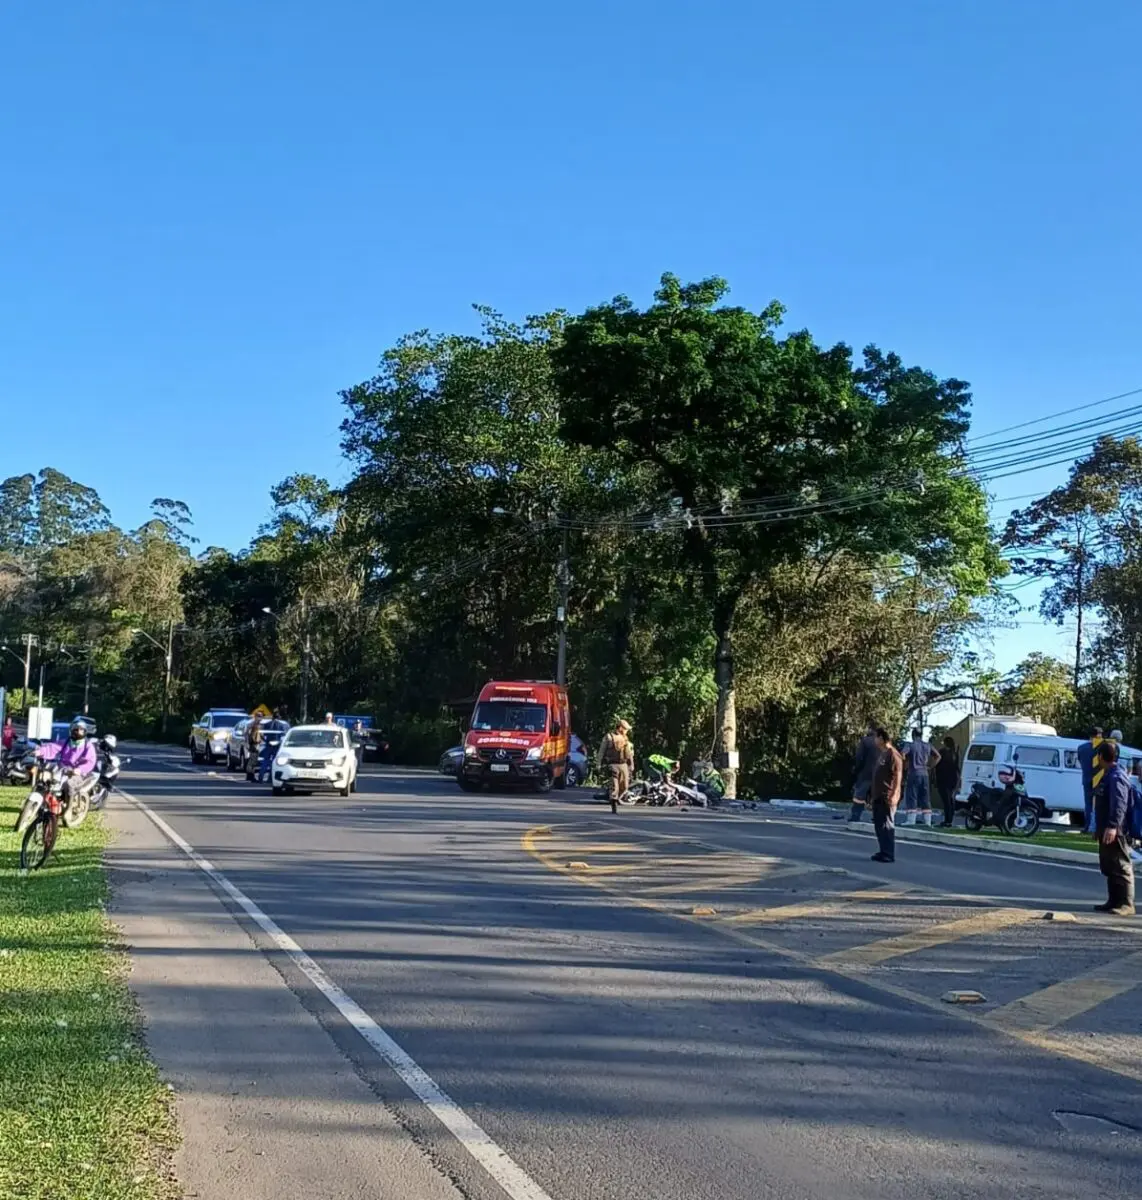 Motociclista morre em acidente de trânsito na rodovia José Spillere em Nova Veneza